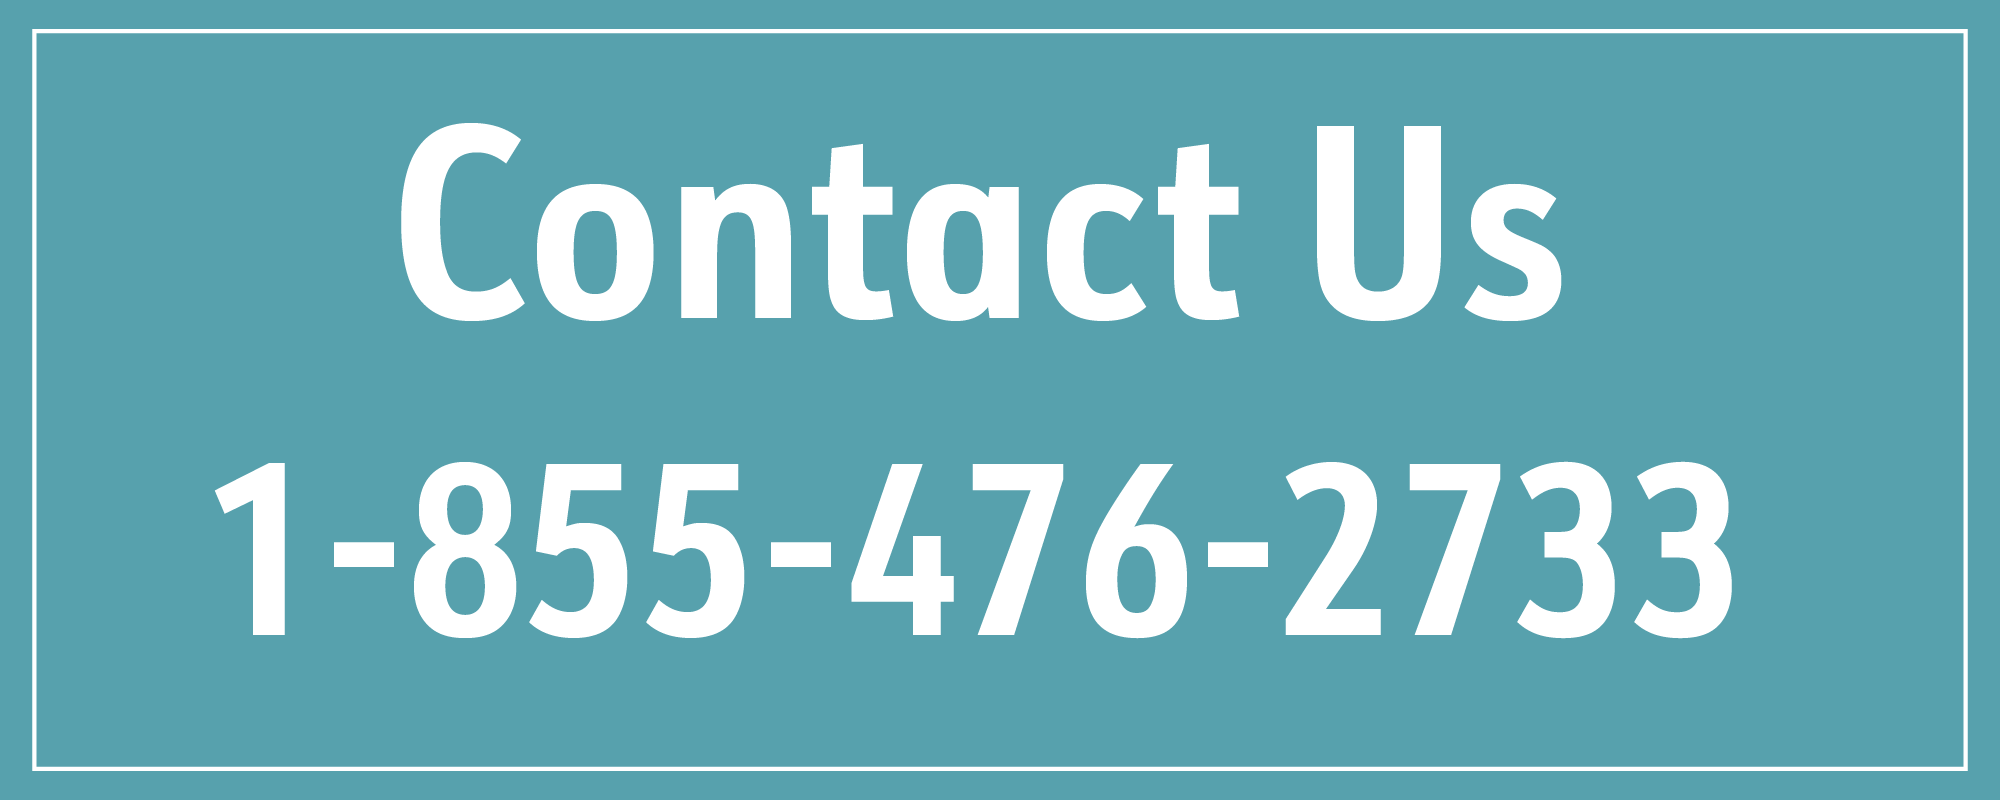 Contact Us at 1-855-476-2733 